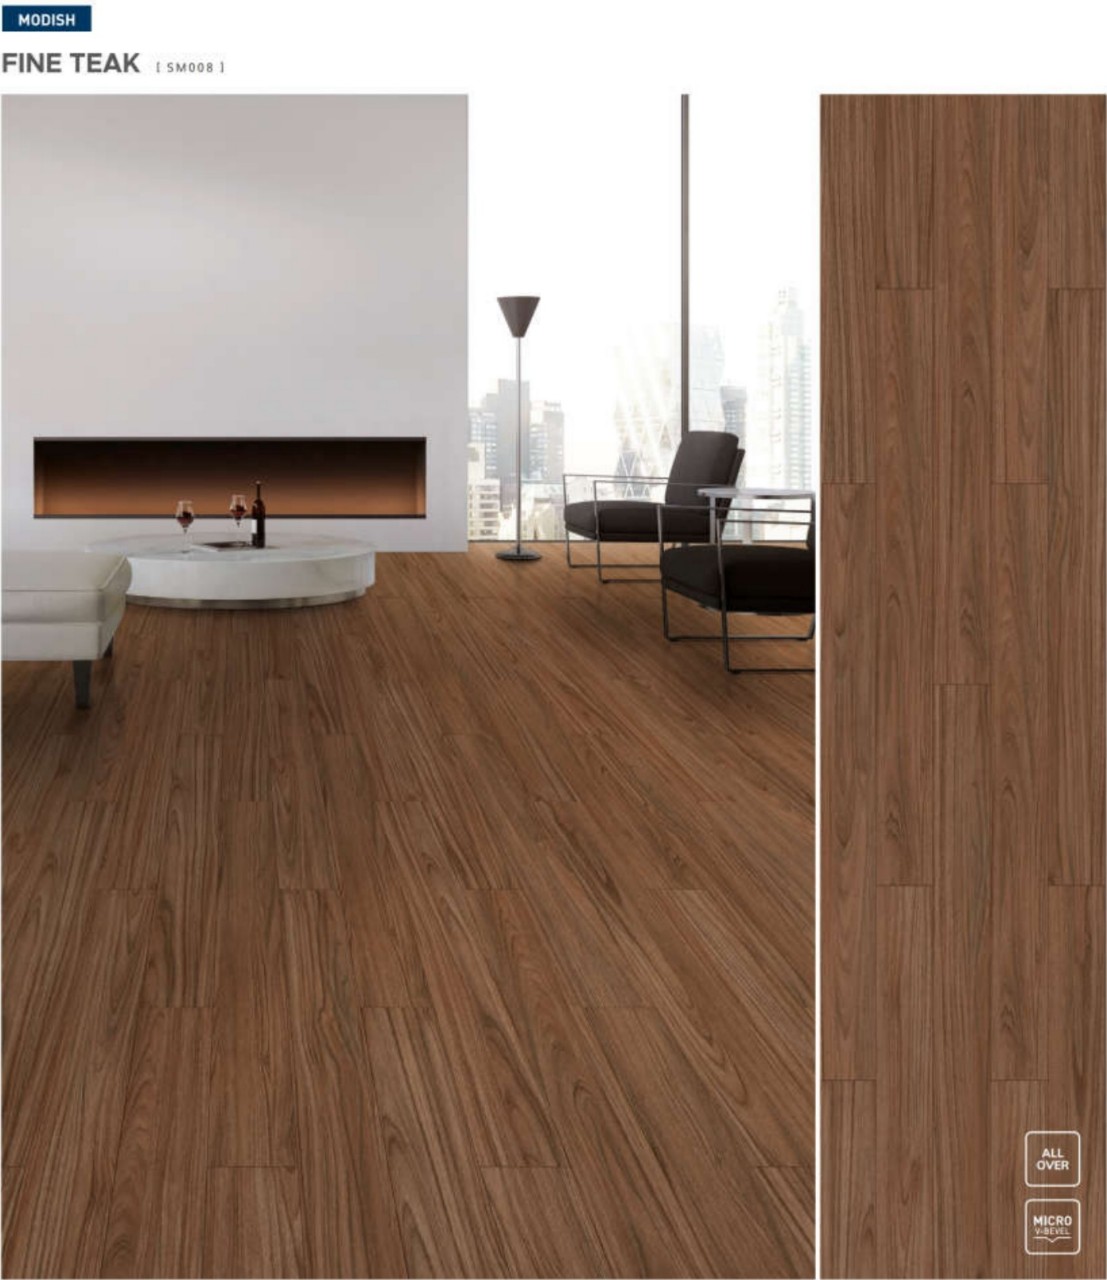 Sàn gỗ có chất lượng tốt cần các tiêu chí độ bền, màu sắc đẹp, an toàn cho sức khỏe